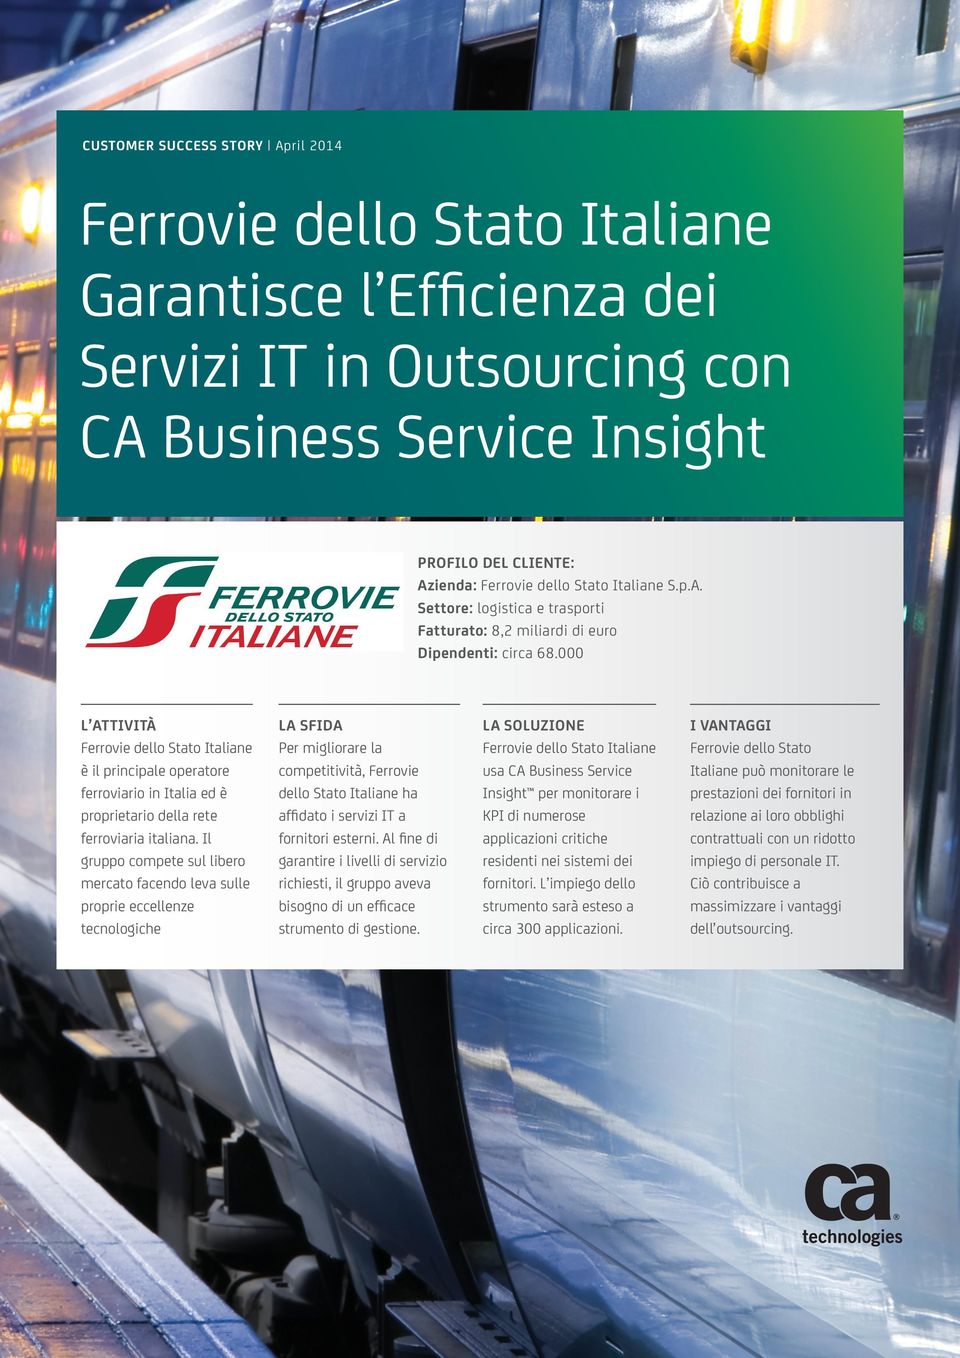 Il gruppo compete sul libero mercato facendo leva sulle proprie eccellenze tecnologiche LA SFIDA Per migliorare la competitività, Ferrovie dello Stato Italiane ha affidato i servizi IT a fornitori